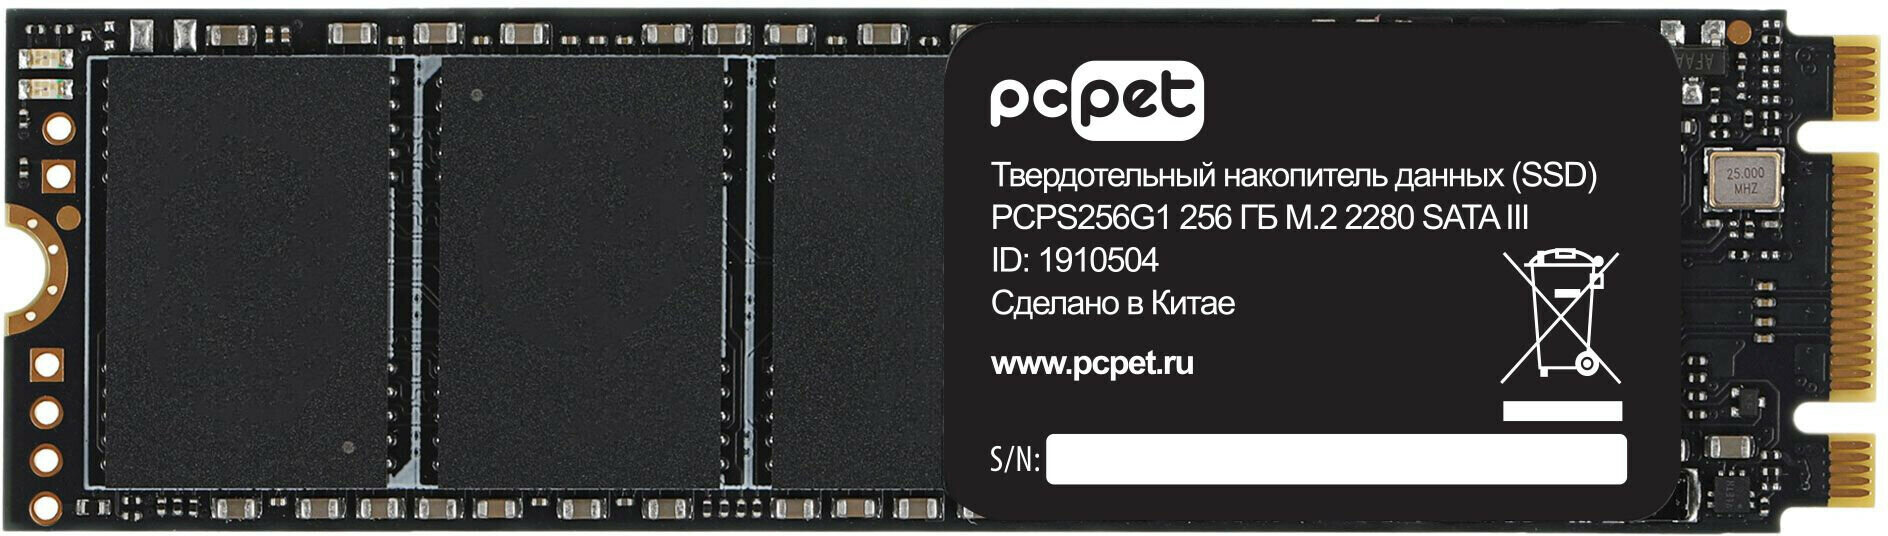 Твердотельный накопитель SSD PC Pet - фото №3